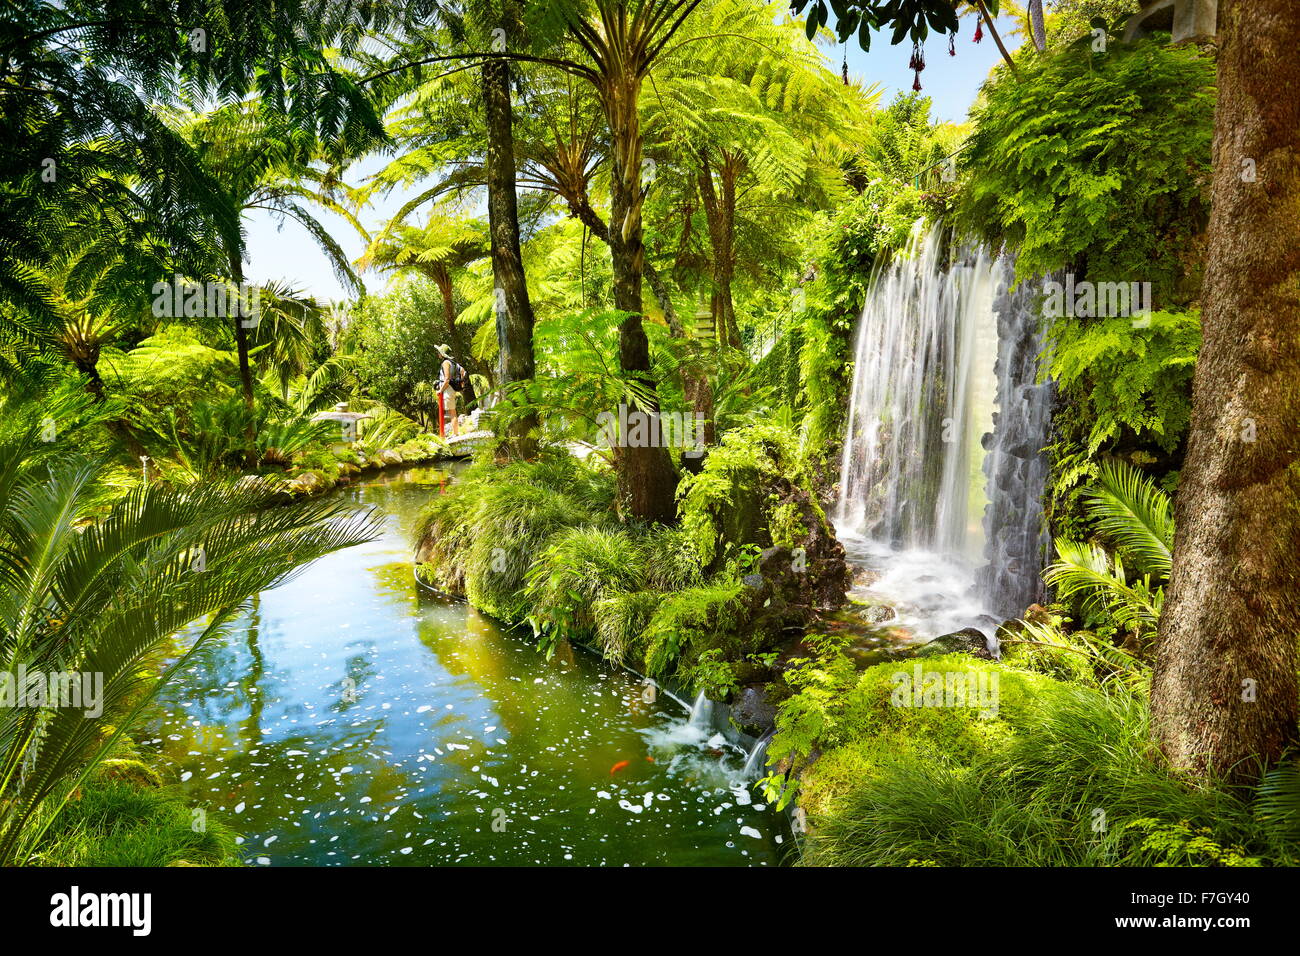 Monte Palace Tropical Garden (Japanese garden) - Funchal, Monte, Madeira Island, Portugal Stock Photo